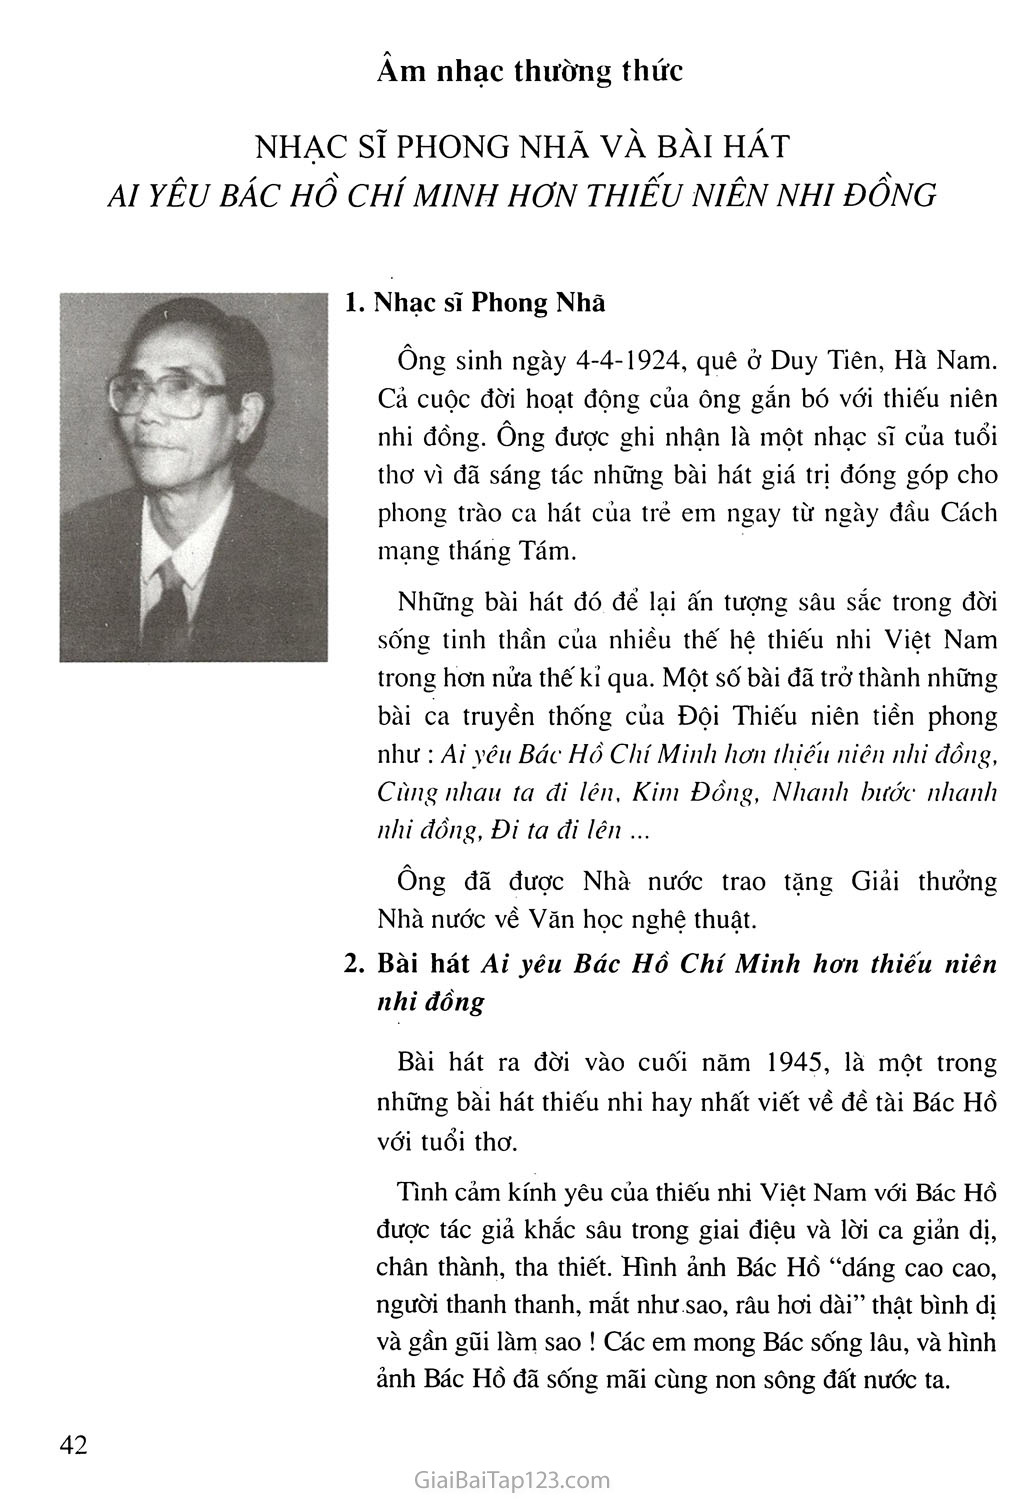 Tiết 21. Âm nhạc thưởng thức: Nhạc sĩ Phong Nhã và bài hát Ai yêu Bác Hồ Chí Minh hơn thiếu niên nhi đồng trang 2